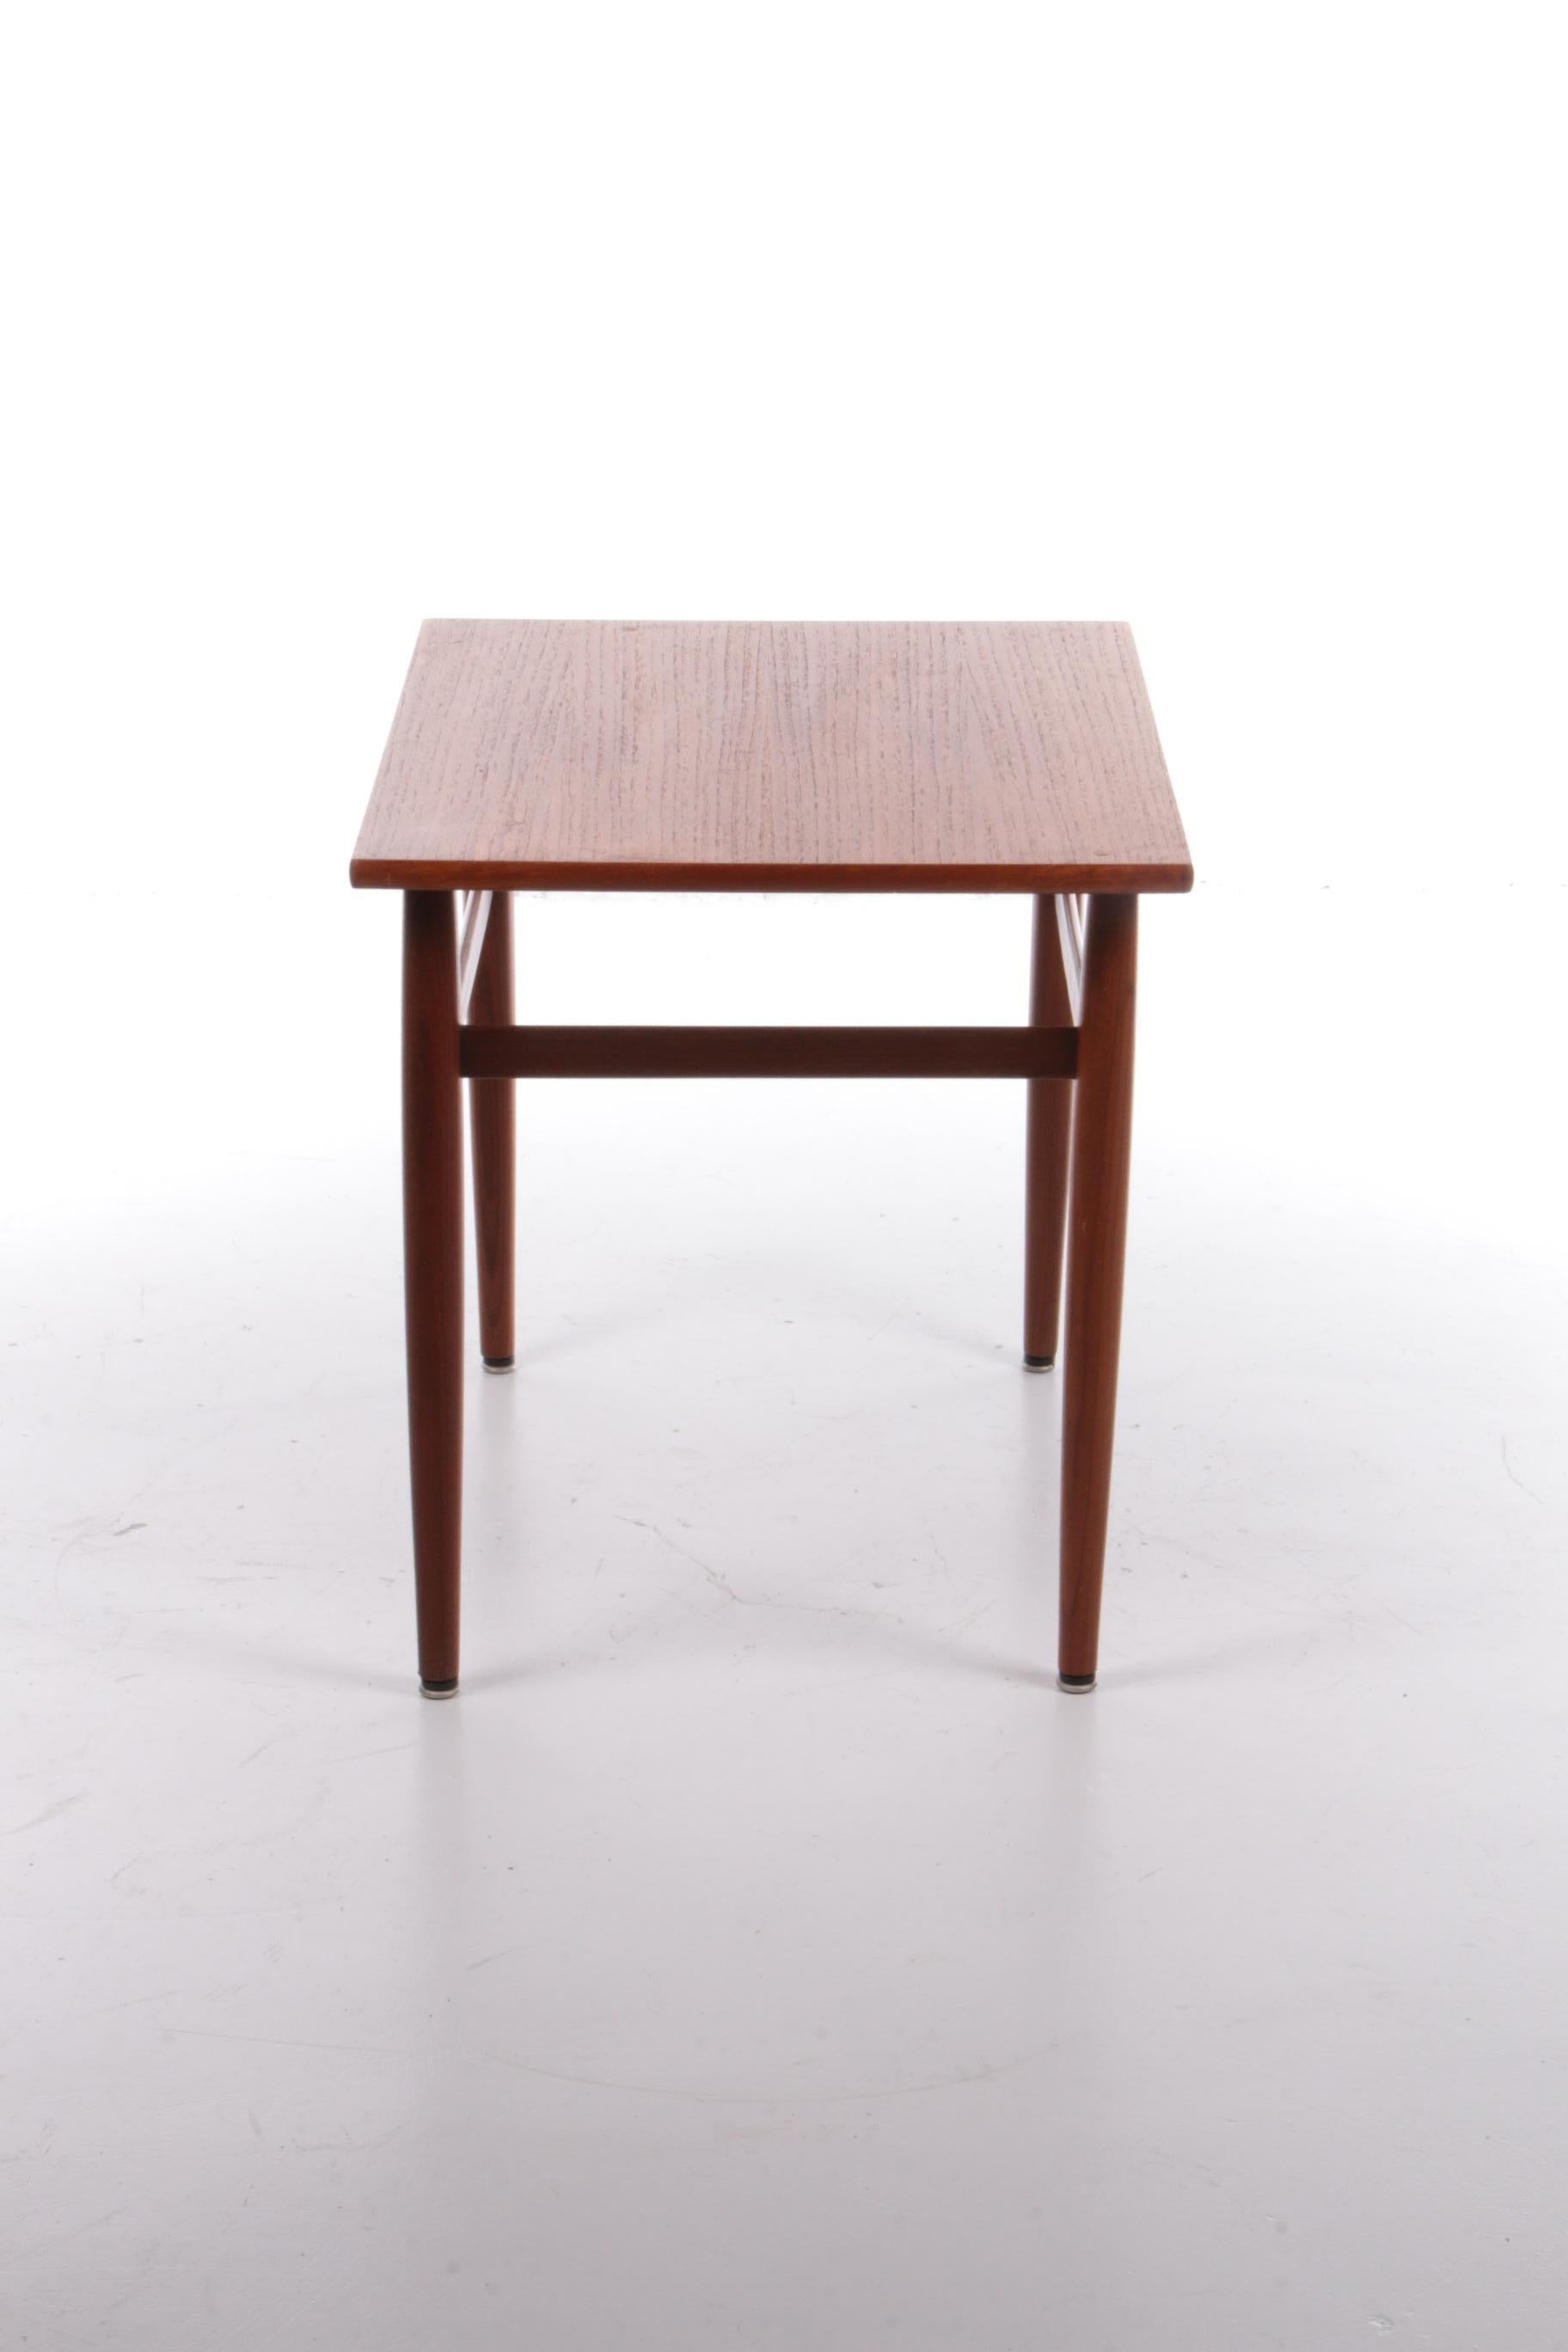 Il s'agit d'un beau modèle de table d'appoint en teck fabriqué dans les années 1960.

Fabriqué au Danemark dans les années 1960.

Très agréable à utiliser comme table d'appoint et pour y placer une plante.

La table peut servir de table